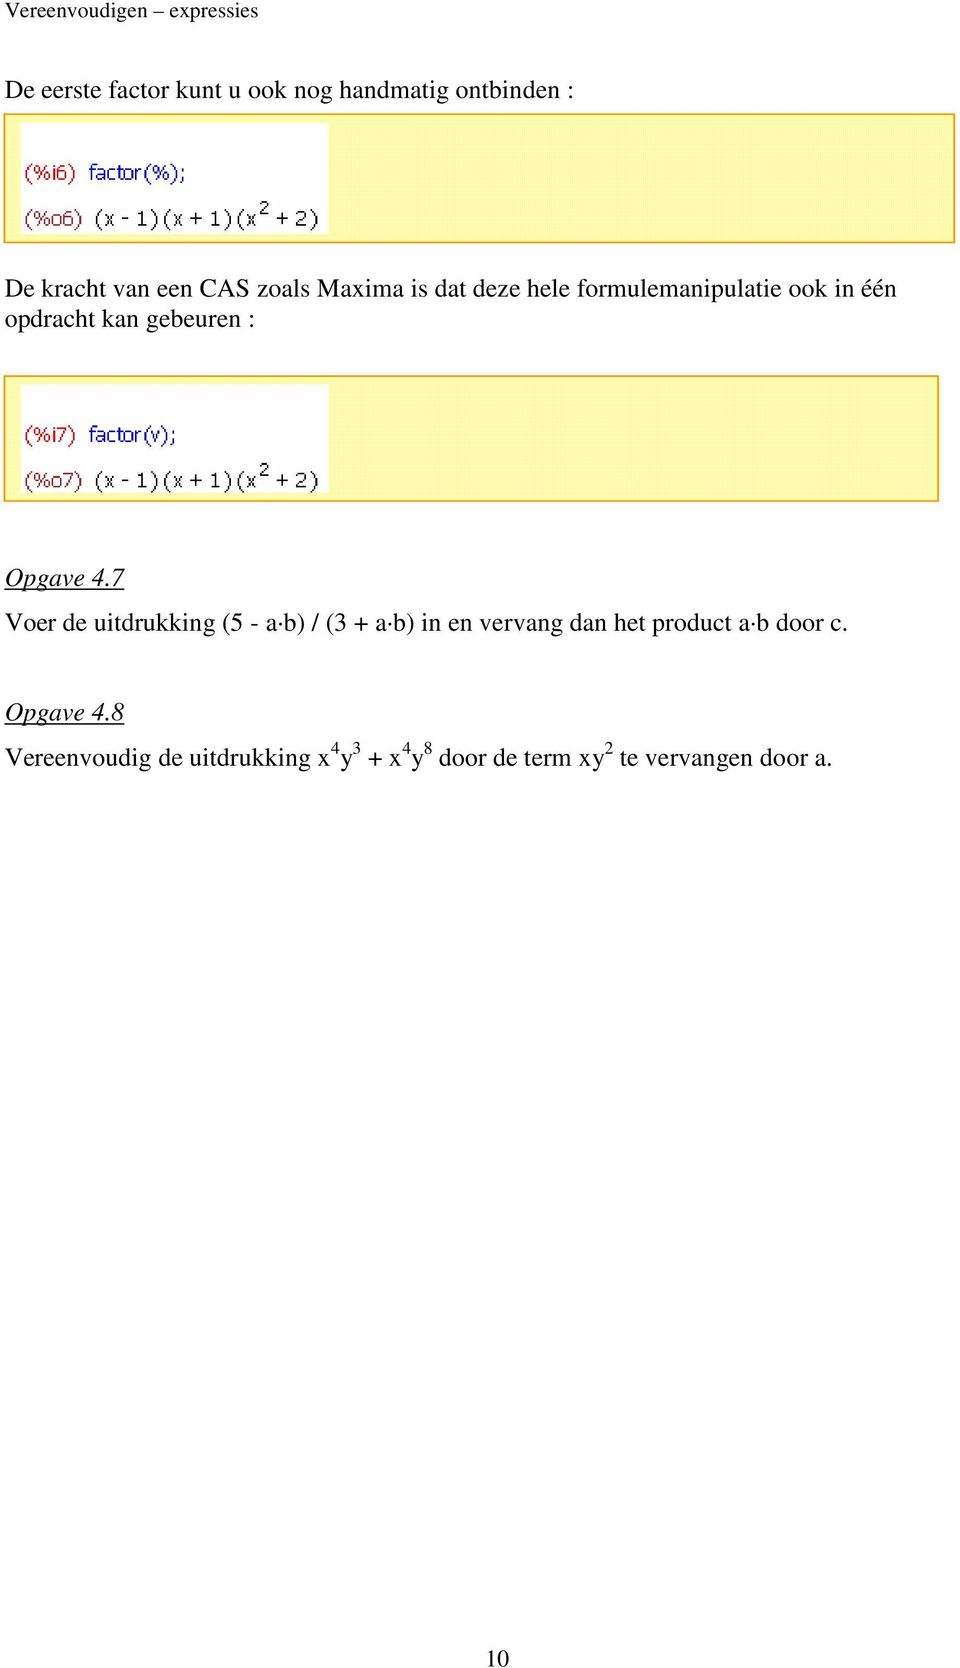 Opgave 4.7 Voer de uitdrukking (5 - a b) / (3 + a b) in en vervang dan het product a b door c.